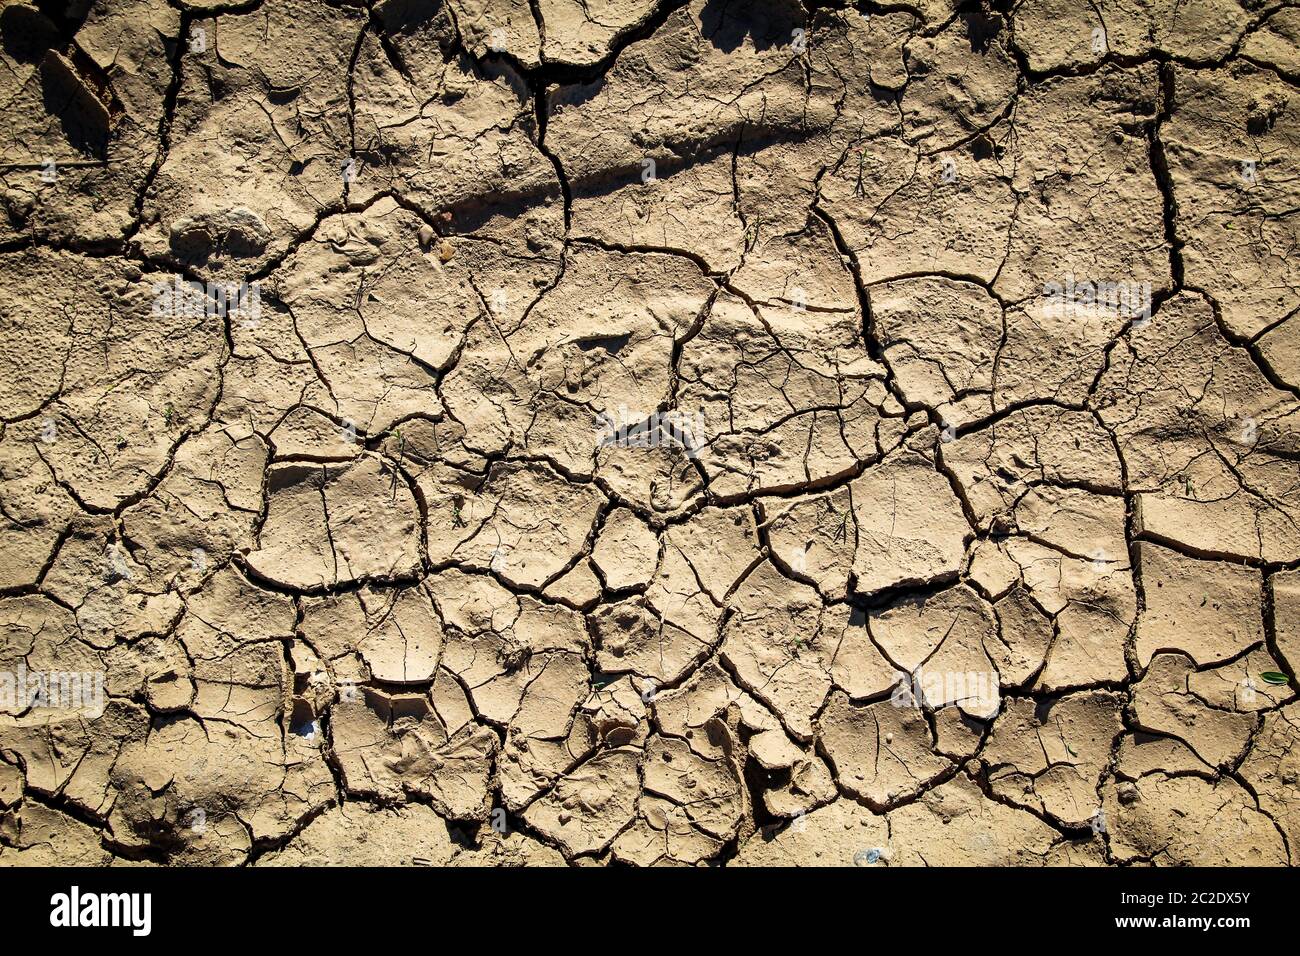 en raison du manque de pluie, la terre s'est séchée avec des fissures, le changement climatique Banque D'Images